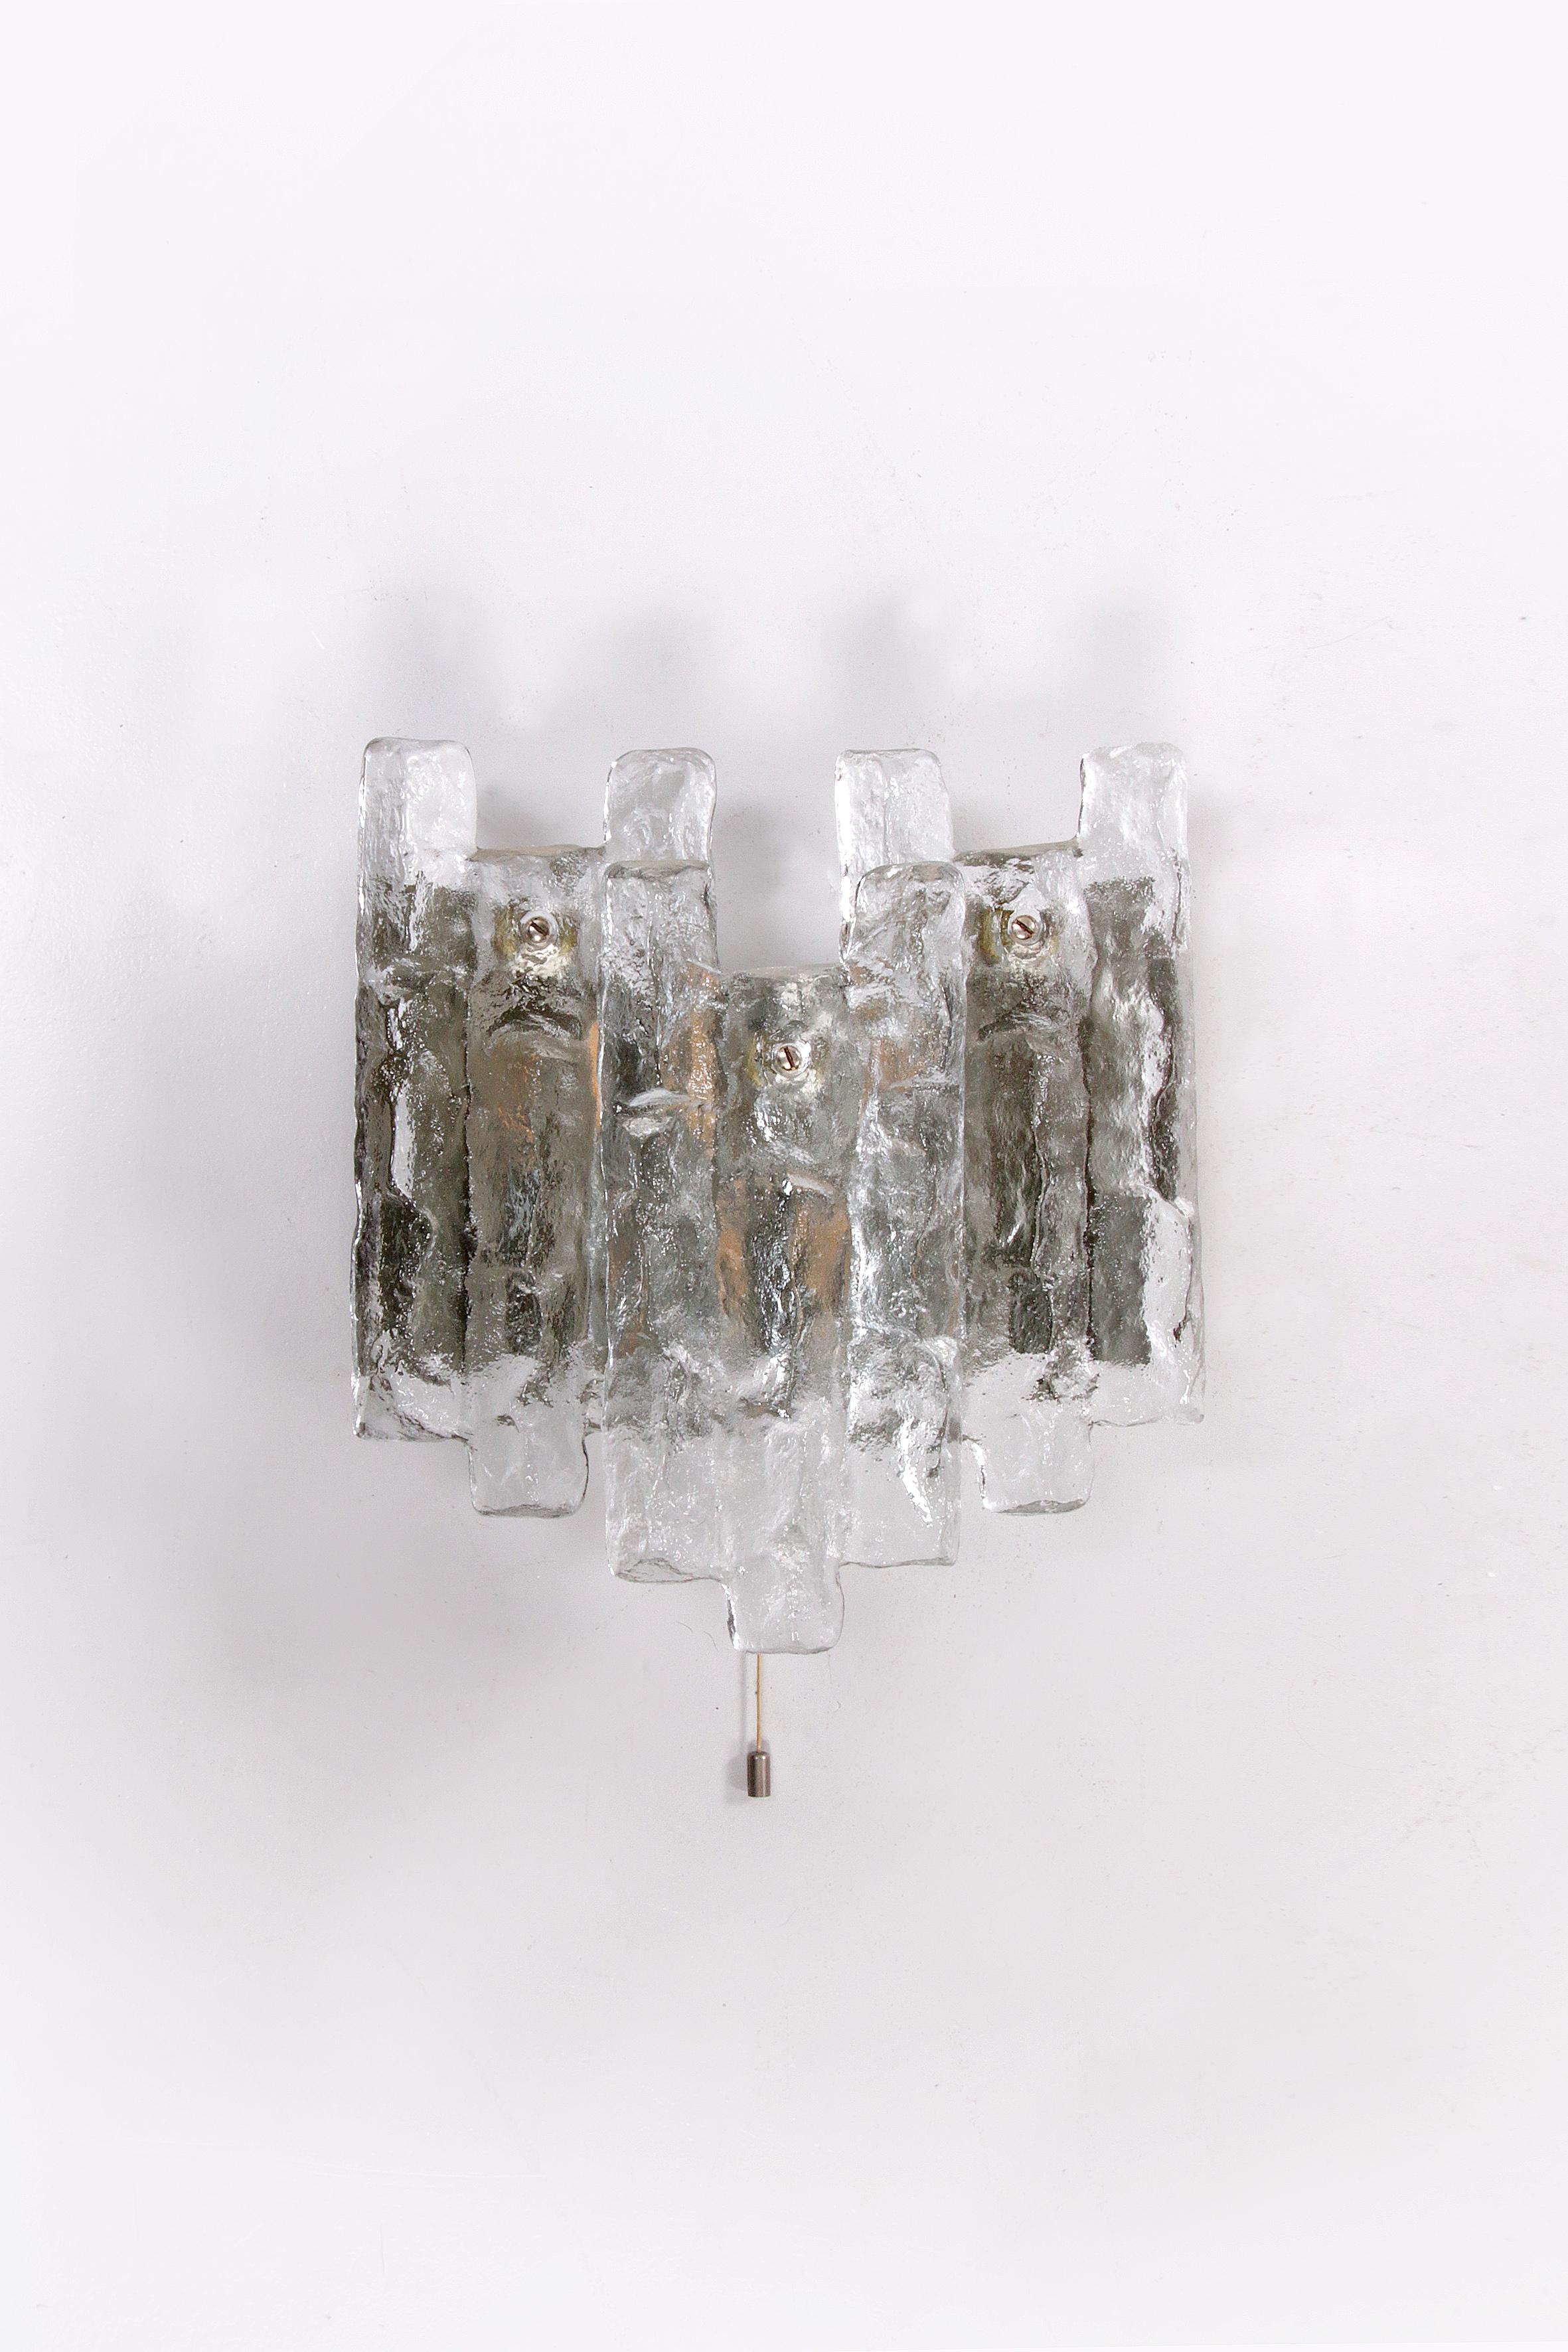 Kristall-Eisglas-Wandleuchte, Entwurf von J. T. Kalmar 1960


Schöne und elegante moderne Wandleuchte aus Messing, hergestellt von J.T. Kalmar Österreich in den 1960er Jahren. Wunderschönes Design, das auf sehr hohem Niveau ausgeführt wurde. An